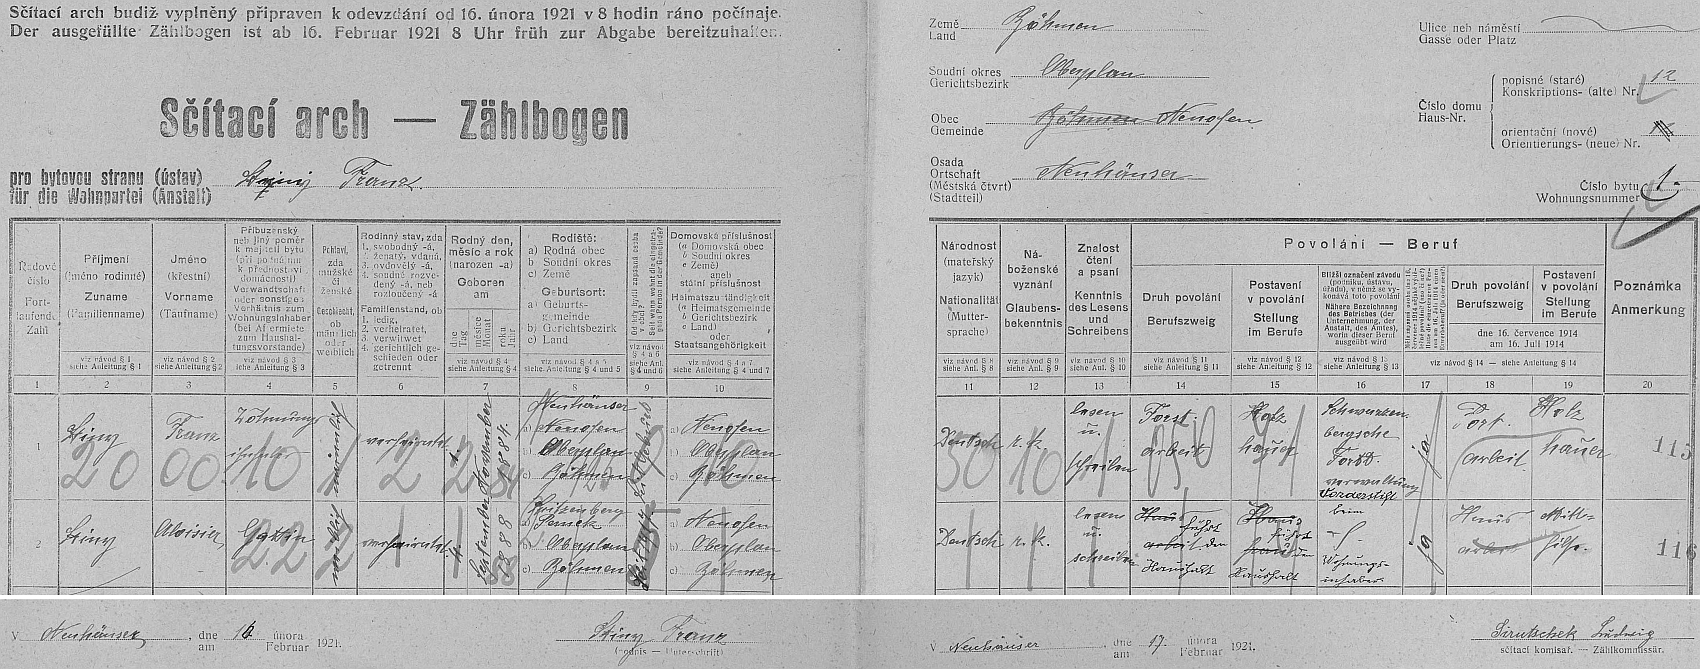 Podle archu sčítání lidu z roku 1921 pro stavení v Neuhäuser čp. 12 u Nové Pece se psal, jak je i jeho podpisu patrno, skutečně příjmením Stiny a Nikendey starší to zřejmě věděl